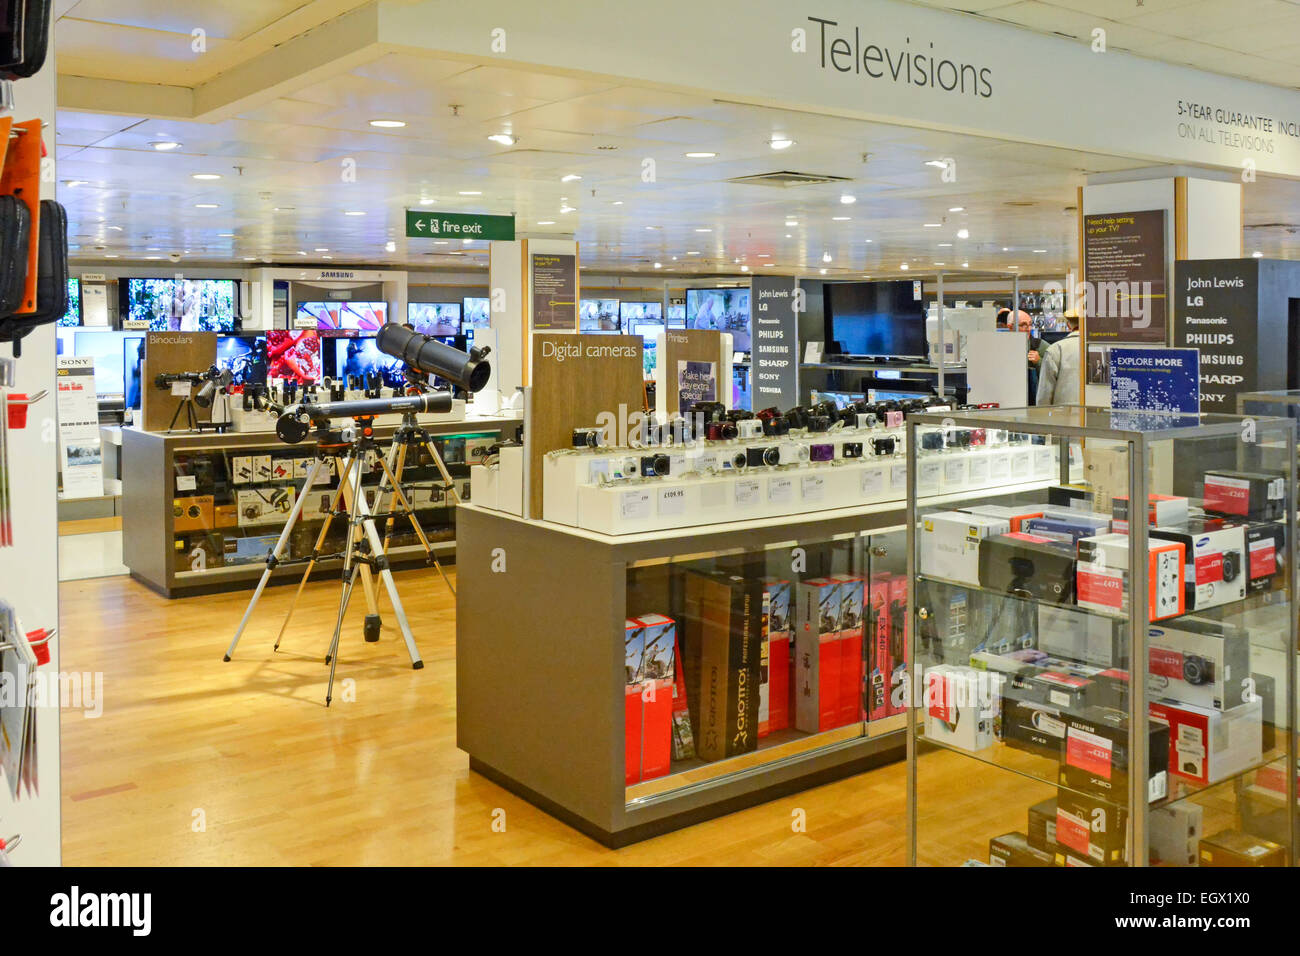 John Lewis Einzelhandelsgeschäft Innenansicht von Fernseh- und Kameraprodukten in der Einkaufsabteilung im Oxford Street Store West End London England Großbritannien Stockfoto